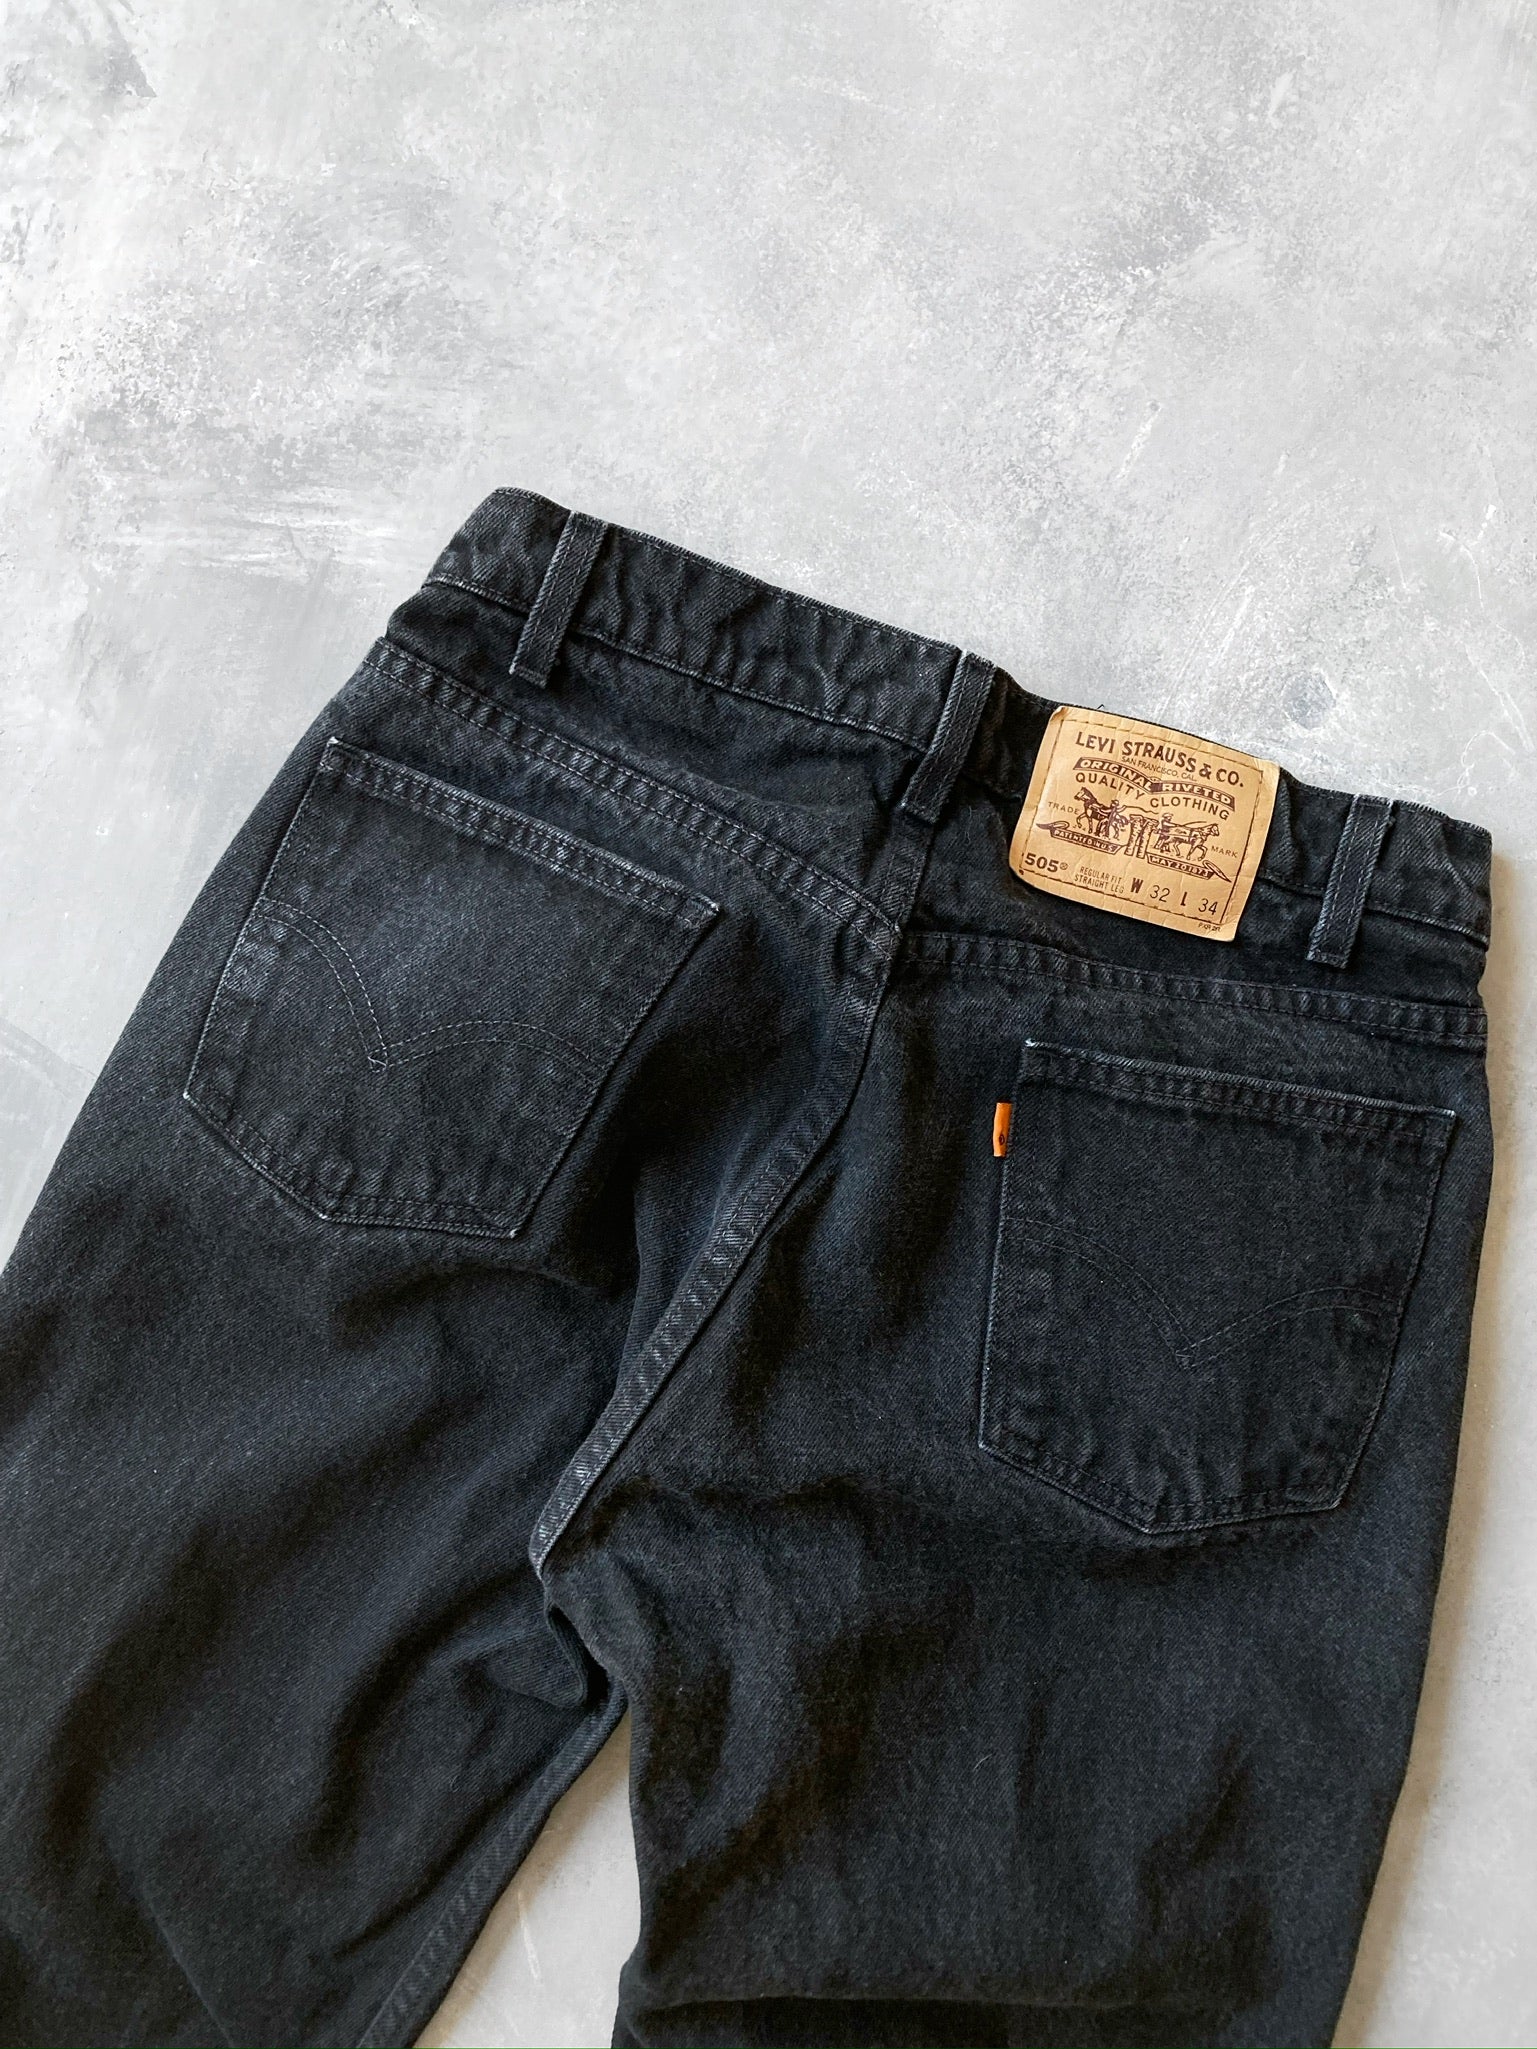 Levi's 505 Jeans 90's - 30x34 – Lot 1 Vintage